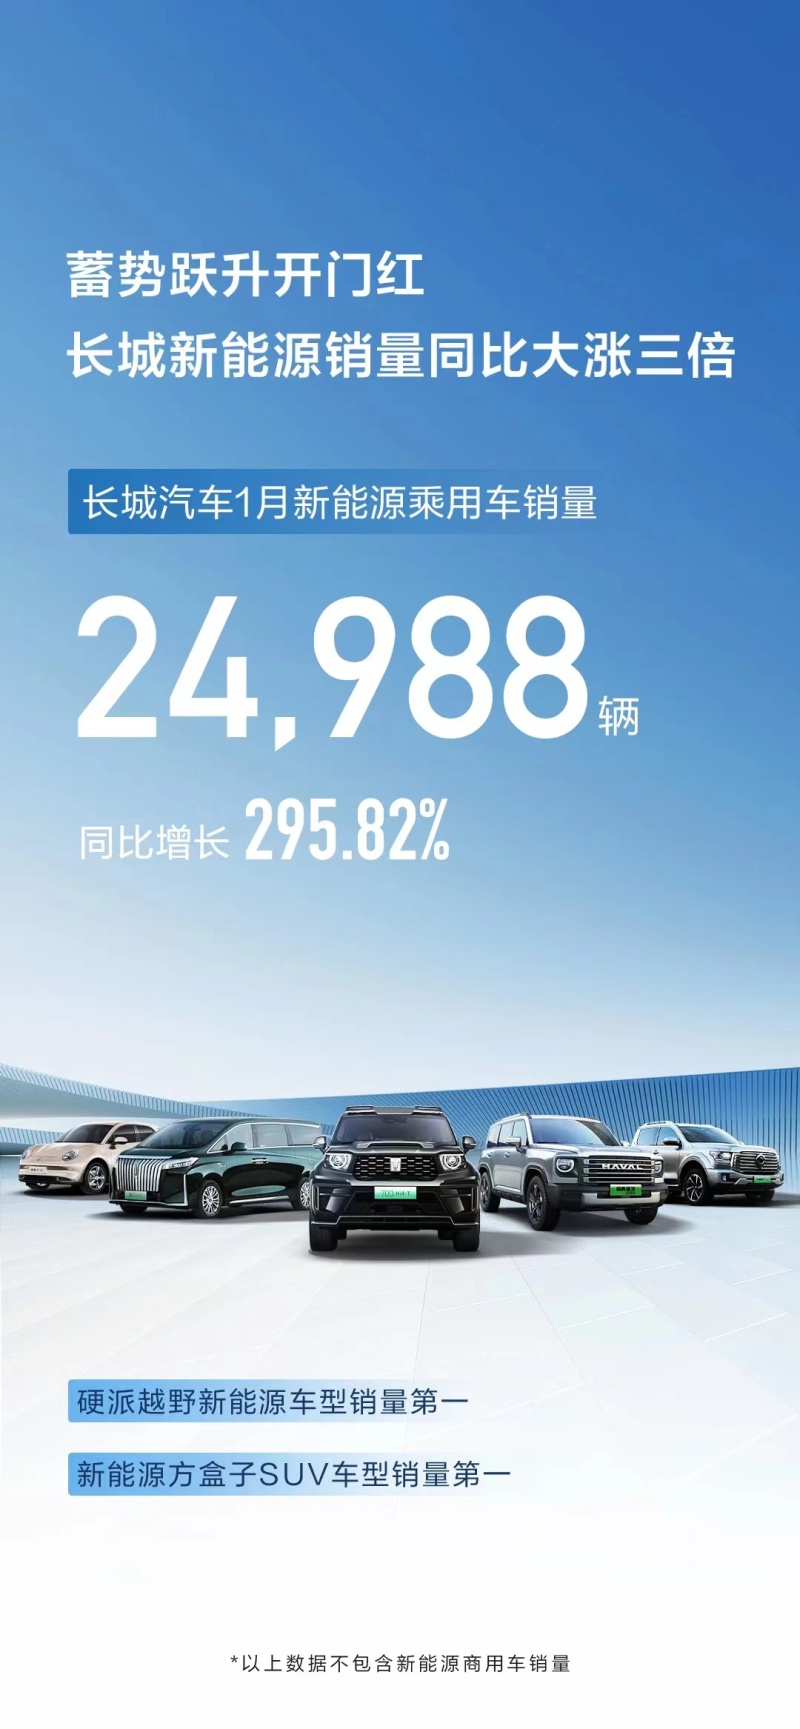 长城汽车将推出全新品牌ZX 首款车型定位高端新能源轿车插图1